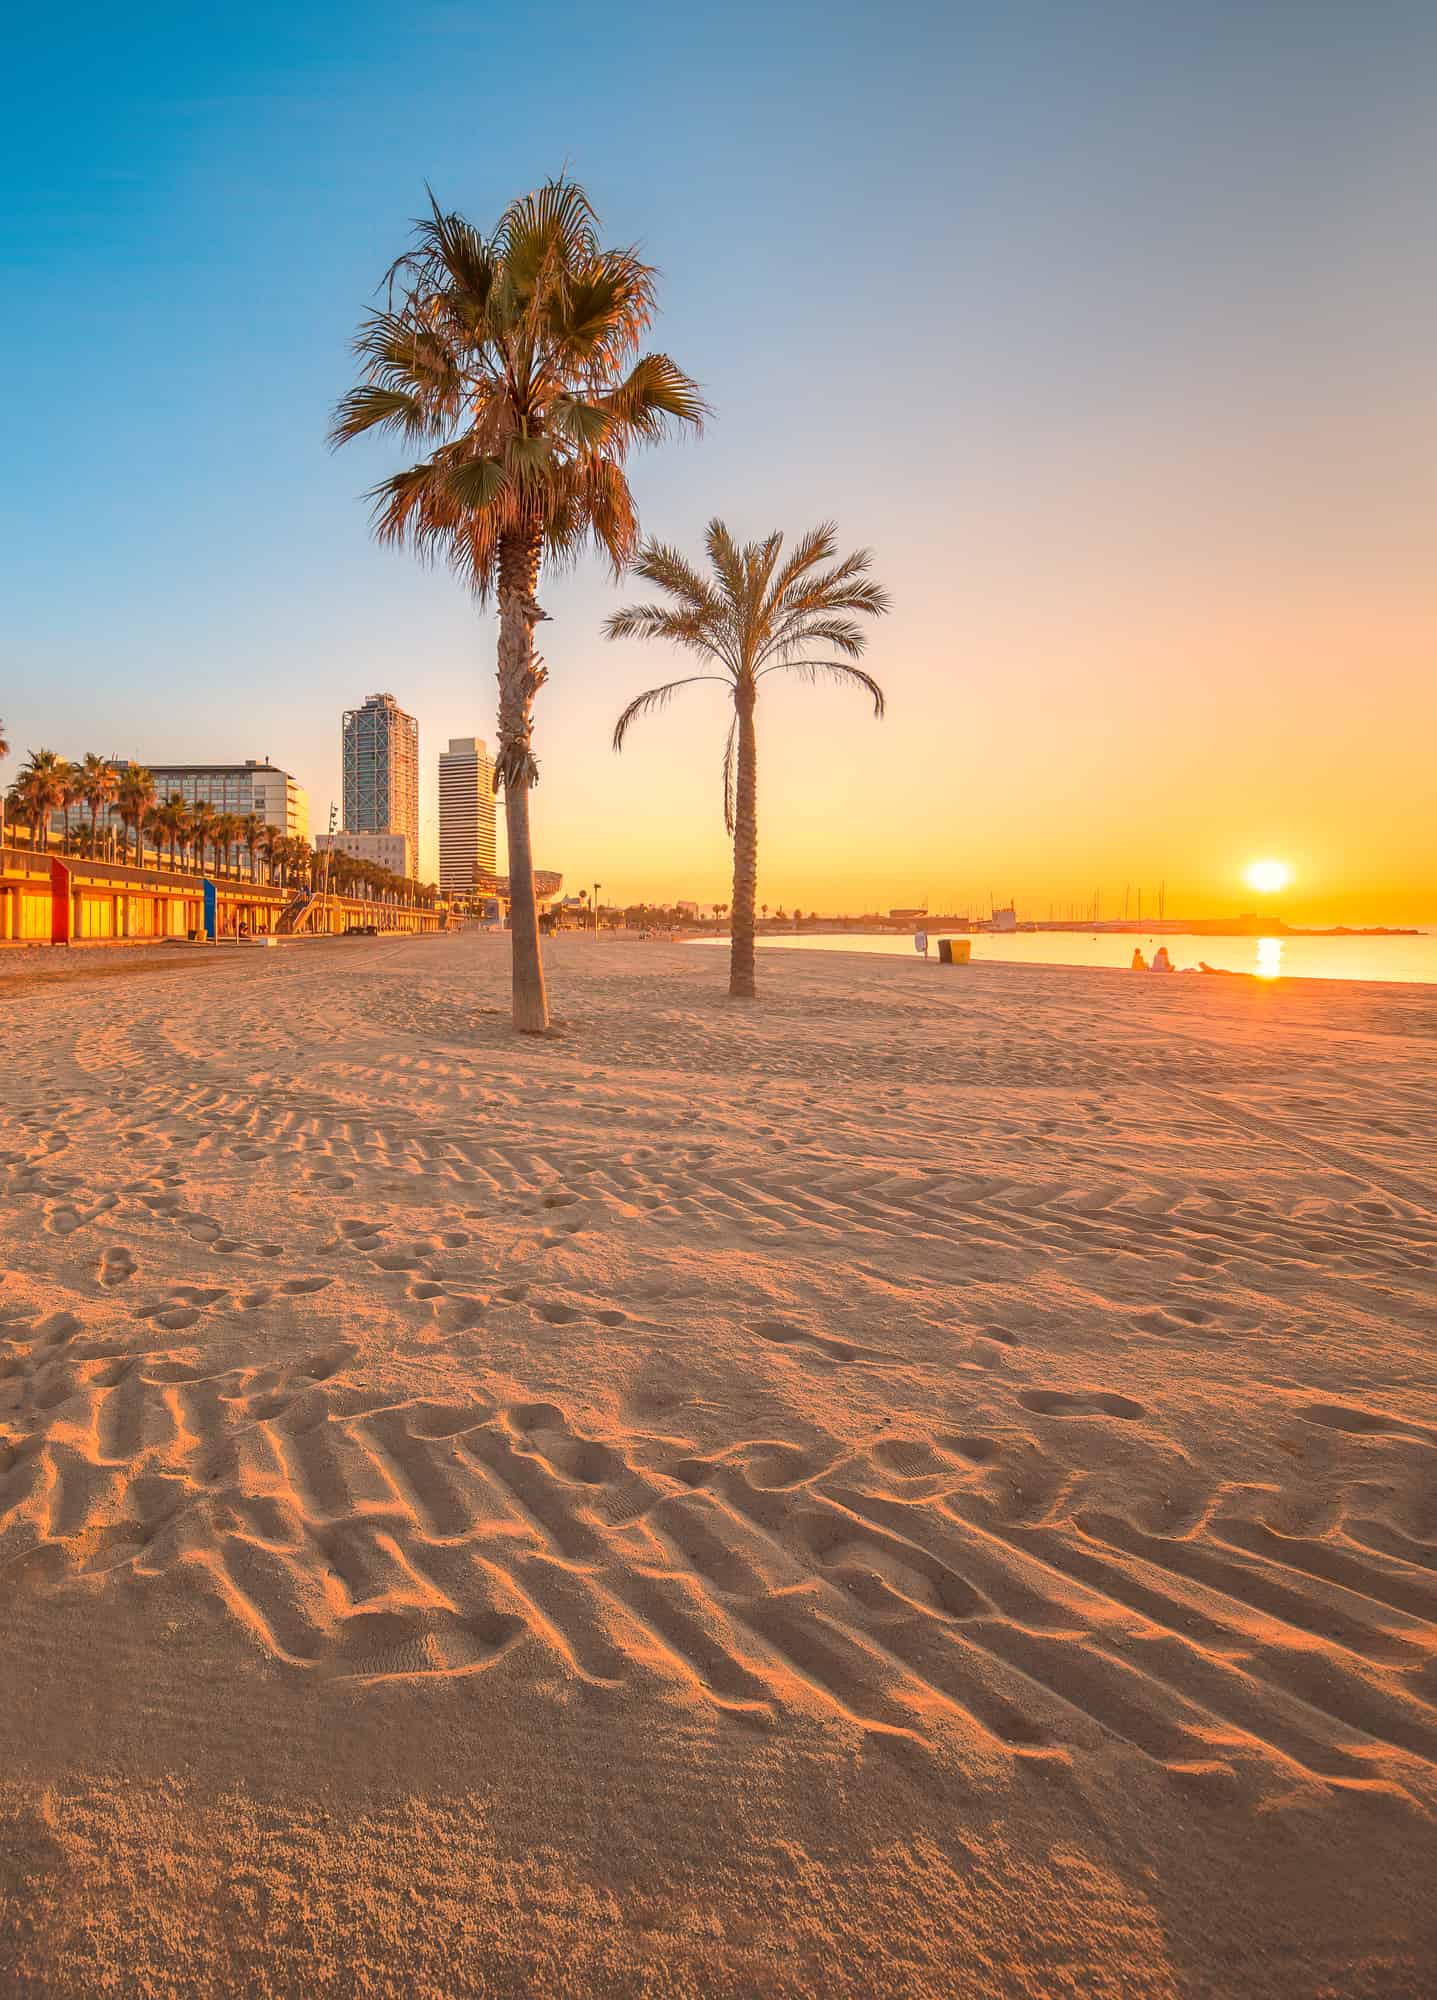 Barceloneta Beach in Barcelona at sunrise